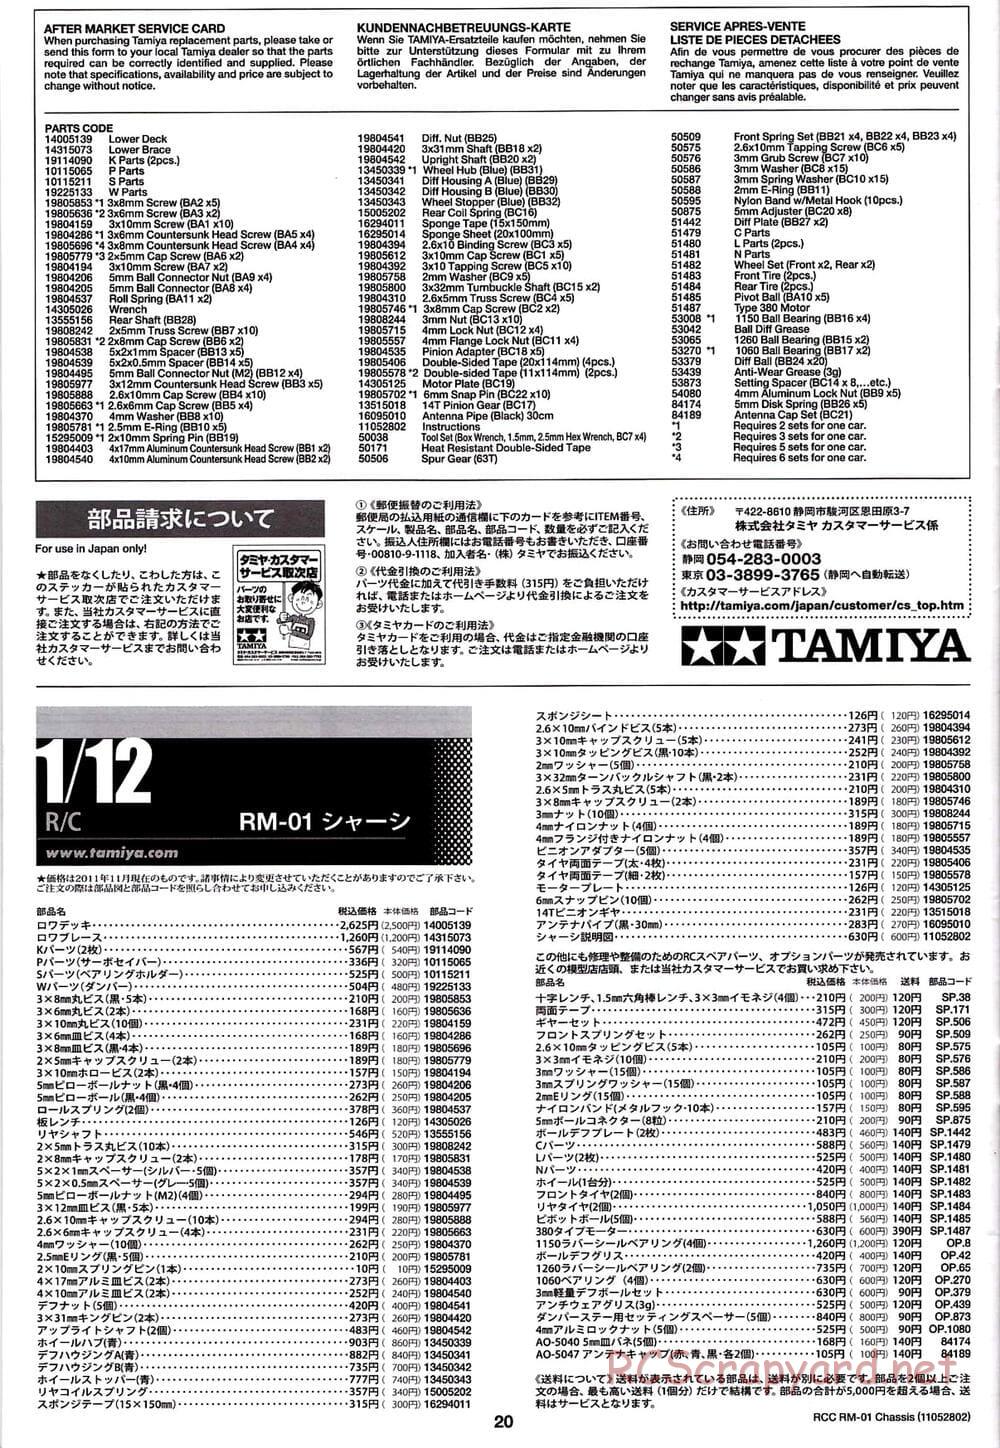 Tamiya - TA04-SS Chassis - Manual - Page 20